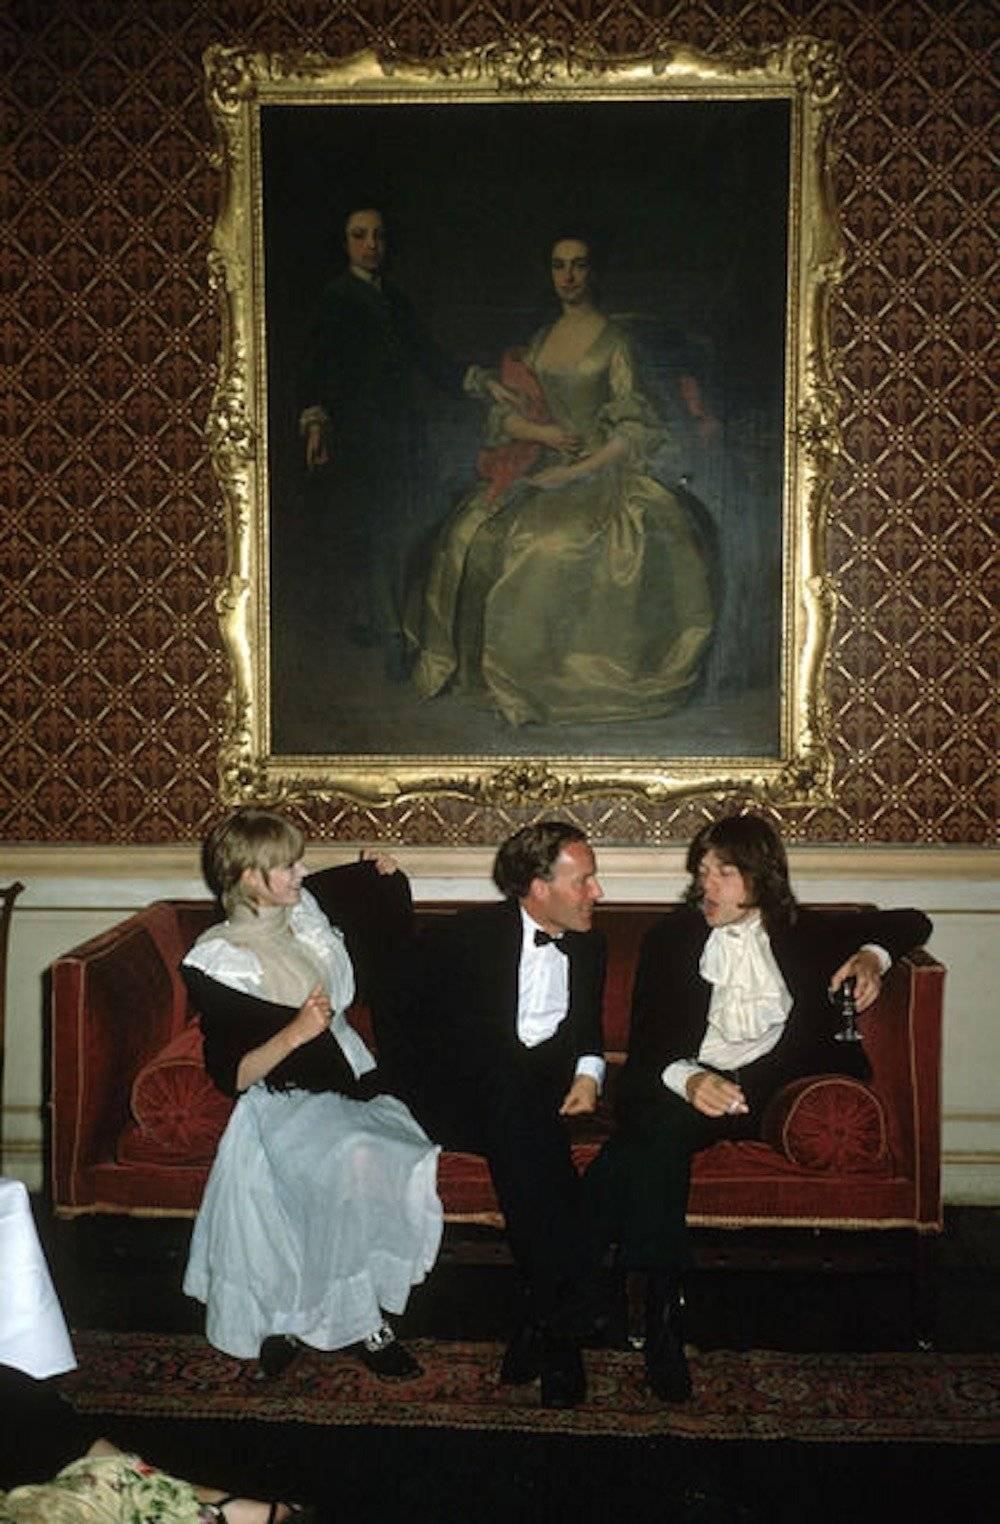 Pop et société
Édition patrimoniale

1968 : De gauche à droite, la chanteuse Marianne Faithfull, l'honorable Desmond Guinness et Mick Jagger (des Rolling Stones) sont assis sur un canapé sous un grand tableau à cadre doré représentant une femme en